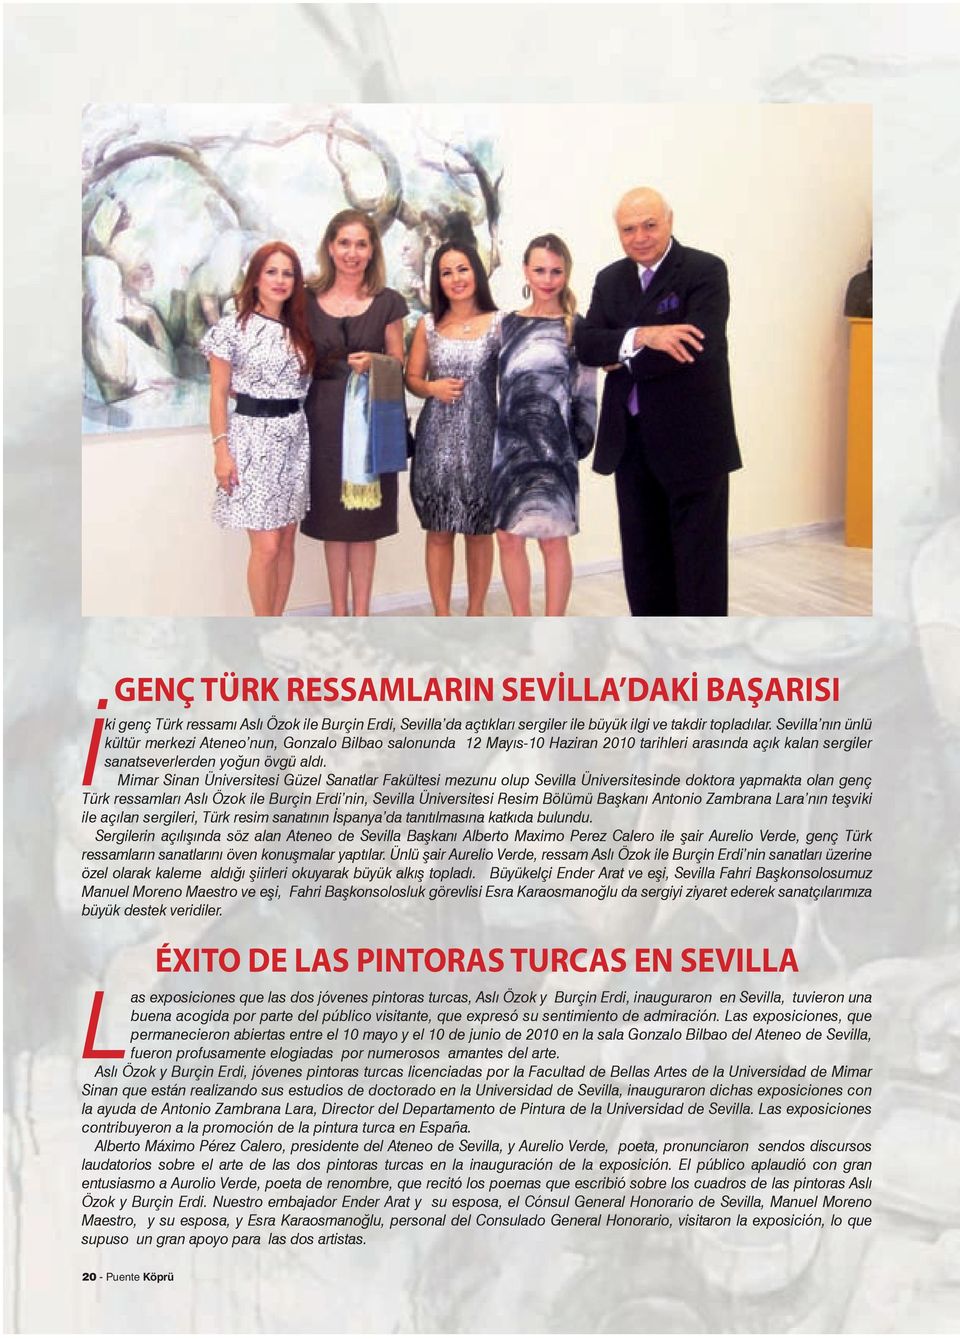 Mimar Sinan Üniversitesi Güzel Sanatlar Fakültesi mezunu olup Sevilla Üniversitesinde doktora yapmakta olan genç Türk ressamları Aslı Özok ile Burçin Erdi nin, Sevilla Üniversitesi Resim Bölümü